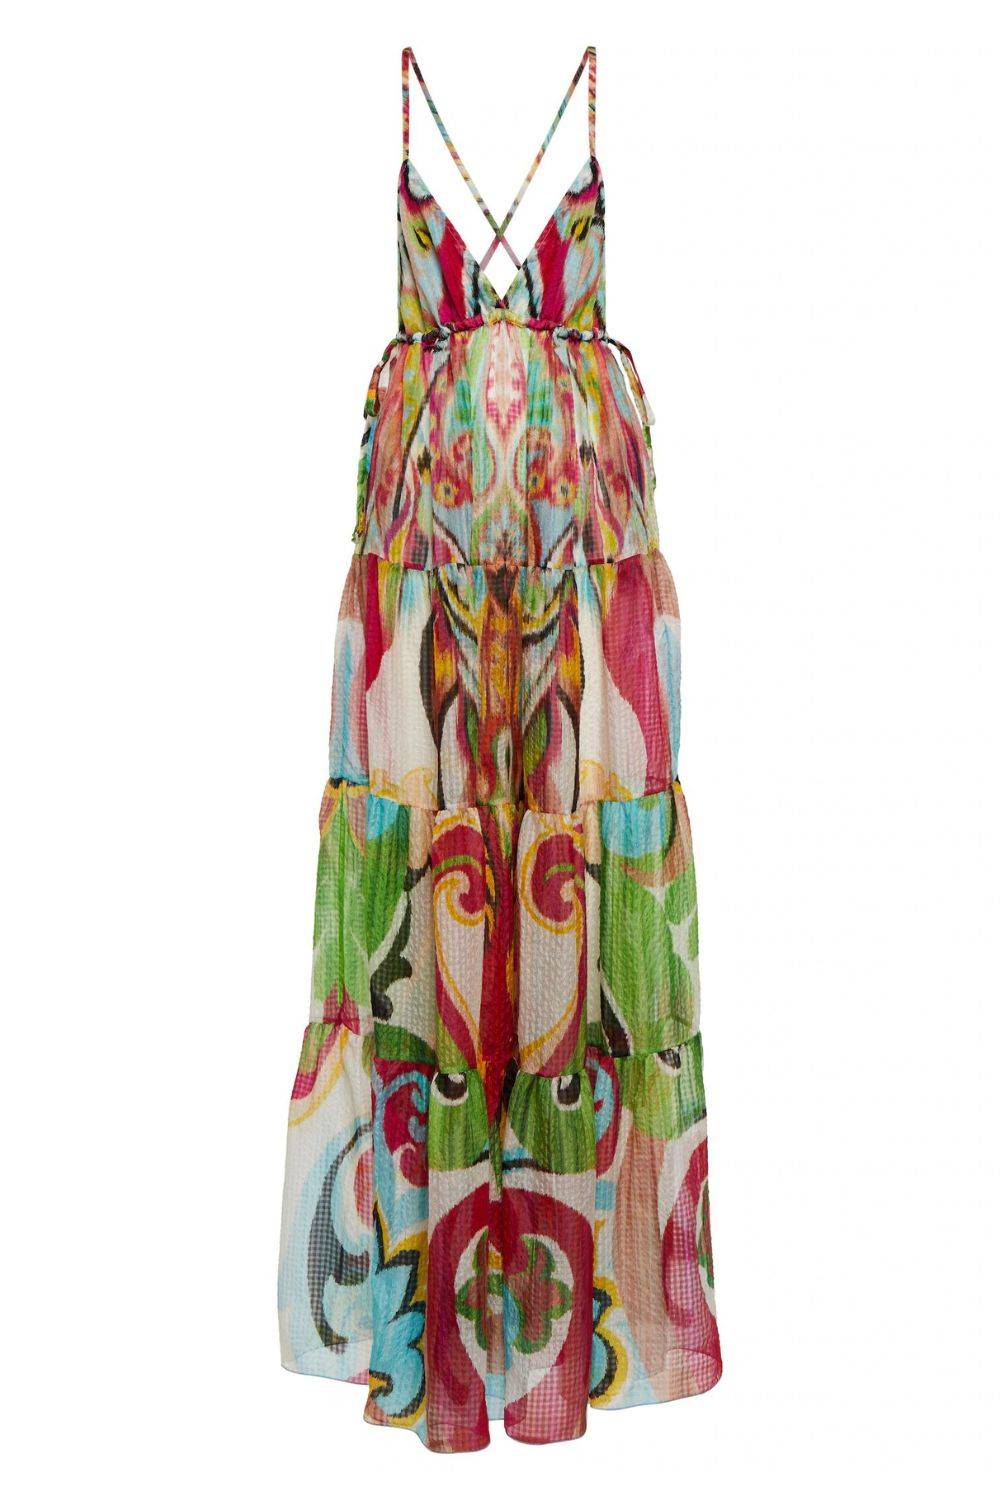 Sukienka Etro, ok. 3000 zł (Fot. materiały prasowe)